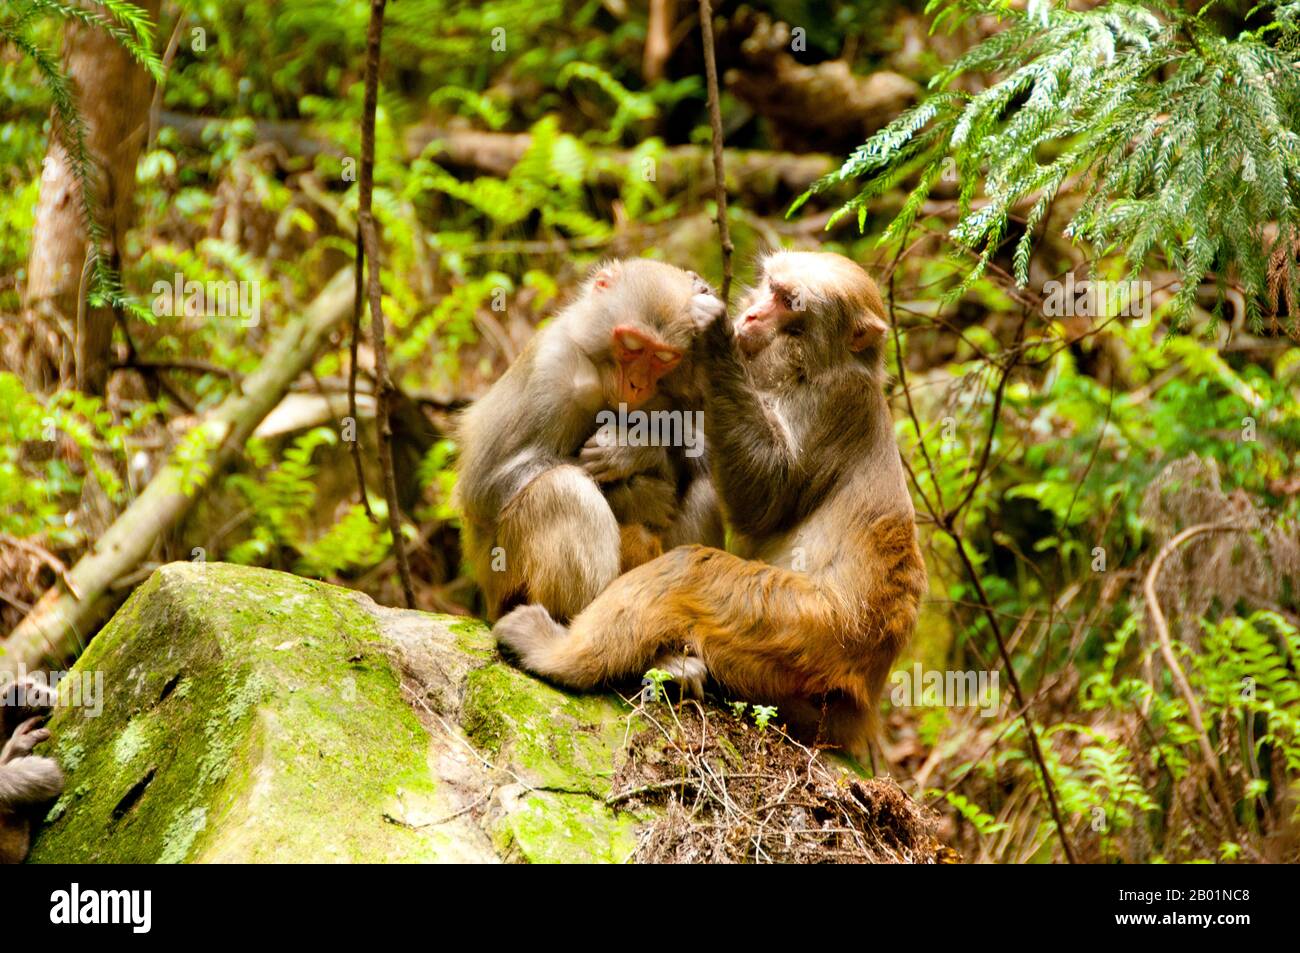 Le rasus macaque (macaca mulatta), également appelé le singe rhésus, est brun ou gris en couleur et a un visage rose, qui est bereft de fourrure. Sa queue est de longueur moyenne et se situe en moyenne entre 20,7 et 22,9 cm (8,1 et 9,0 po). Les mâles adultes mesurent environ 53 cm (21 po) en moyenne et pèsent environ 7,7 kg (17 lb). Les femelles sont plus petites, d'une longueur moyenne de 47 cm (19 po) et d'un poids de 5,3 kg (12 lb). Il est inscrit comme Étant Le Moins Préoccupant dans la Liste rouge des espèces menacées de l'UICN en raison de sa large répartition, de sa population présumée importante et de sa tolérance à un large éventail d'habitats. Natif du Sud, Banque D'Images